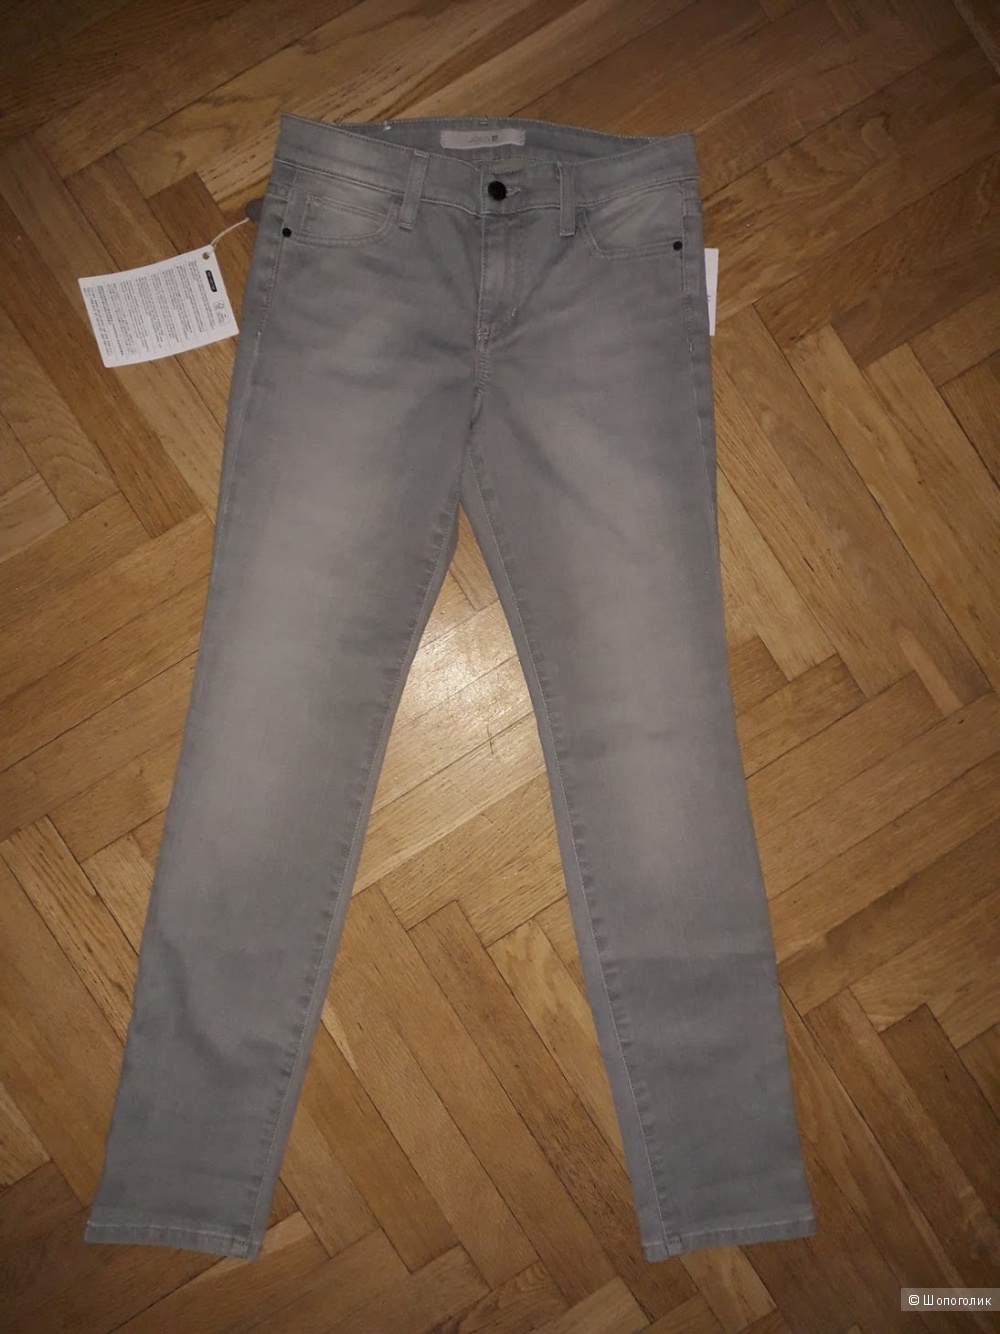 Джинсы JOE´S Jeans, 26 размер